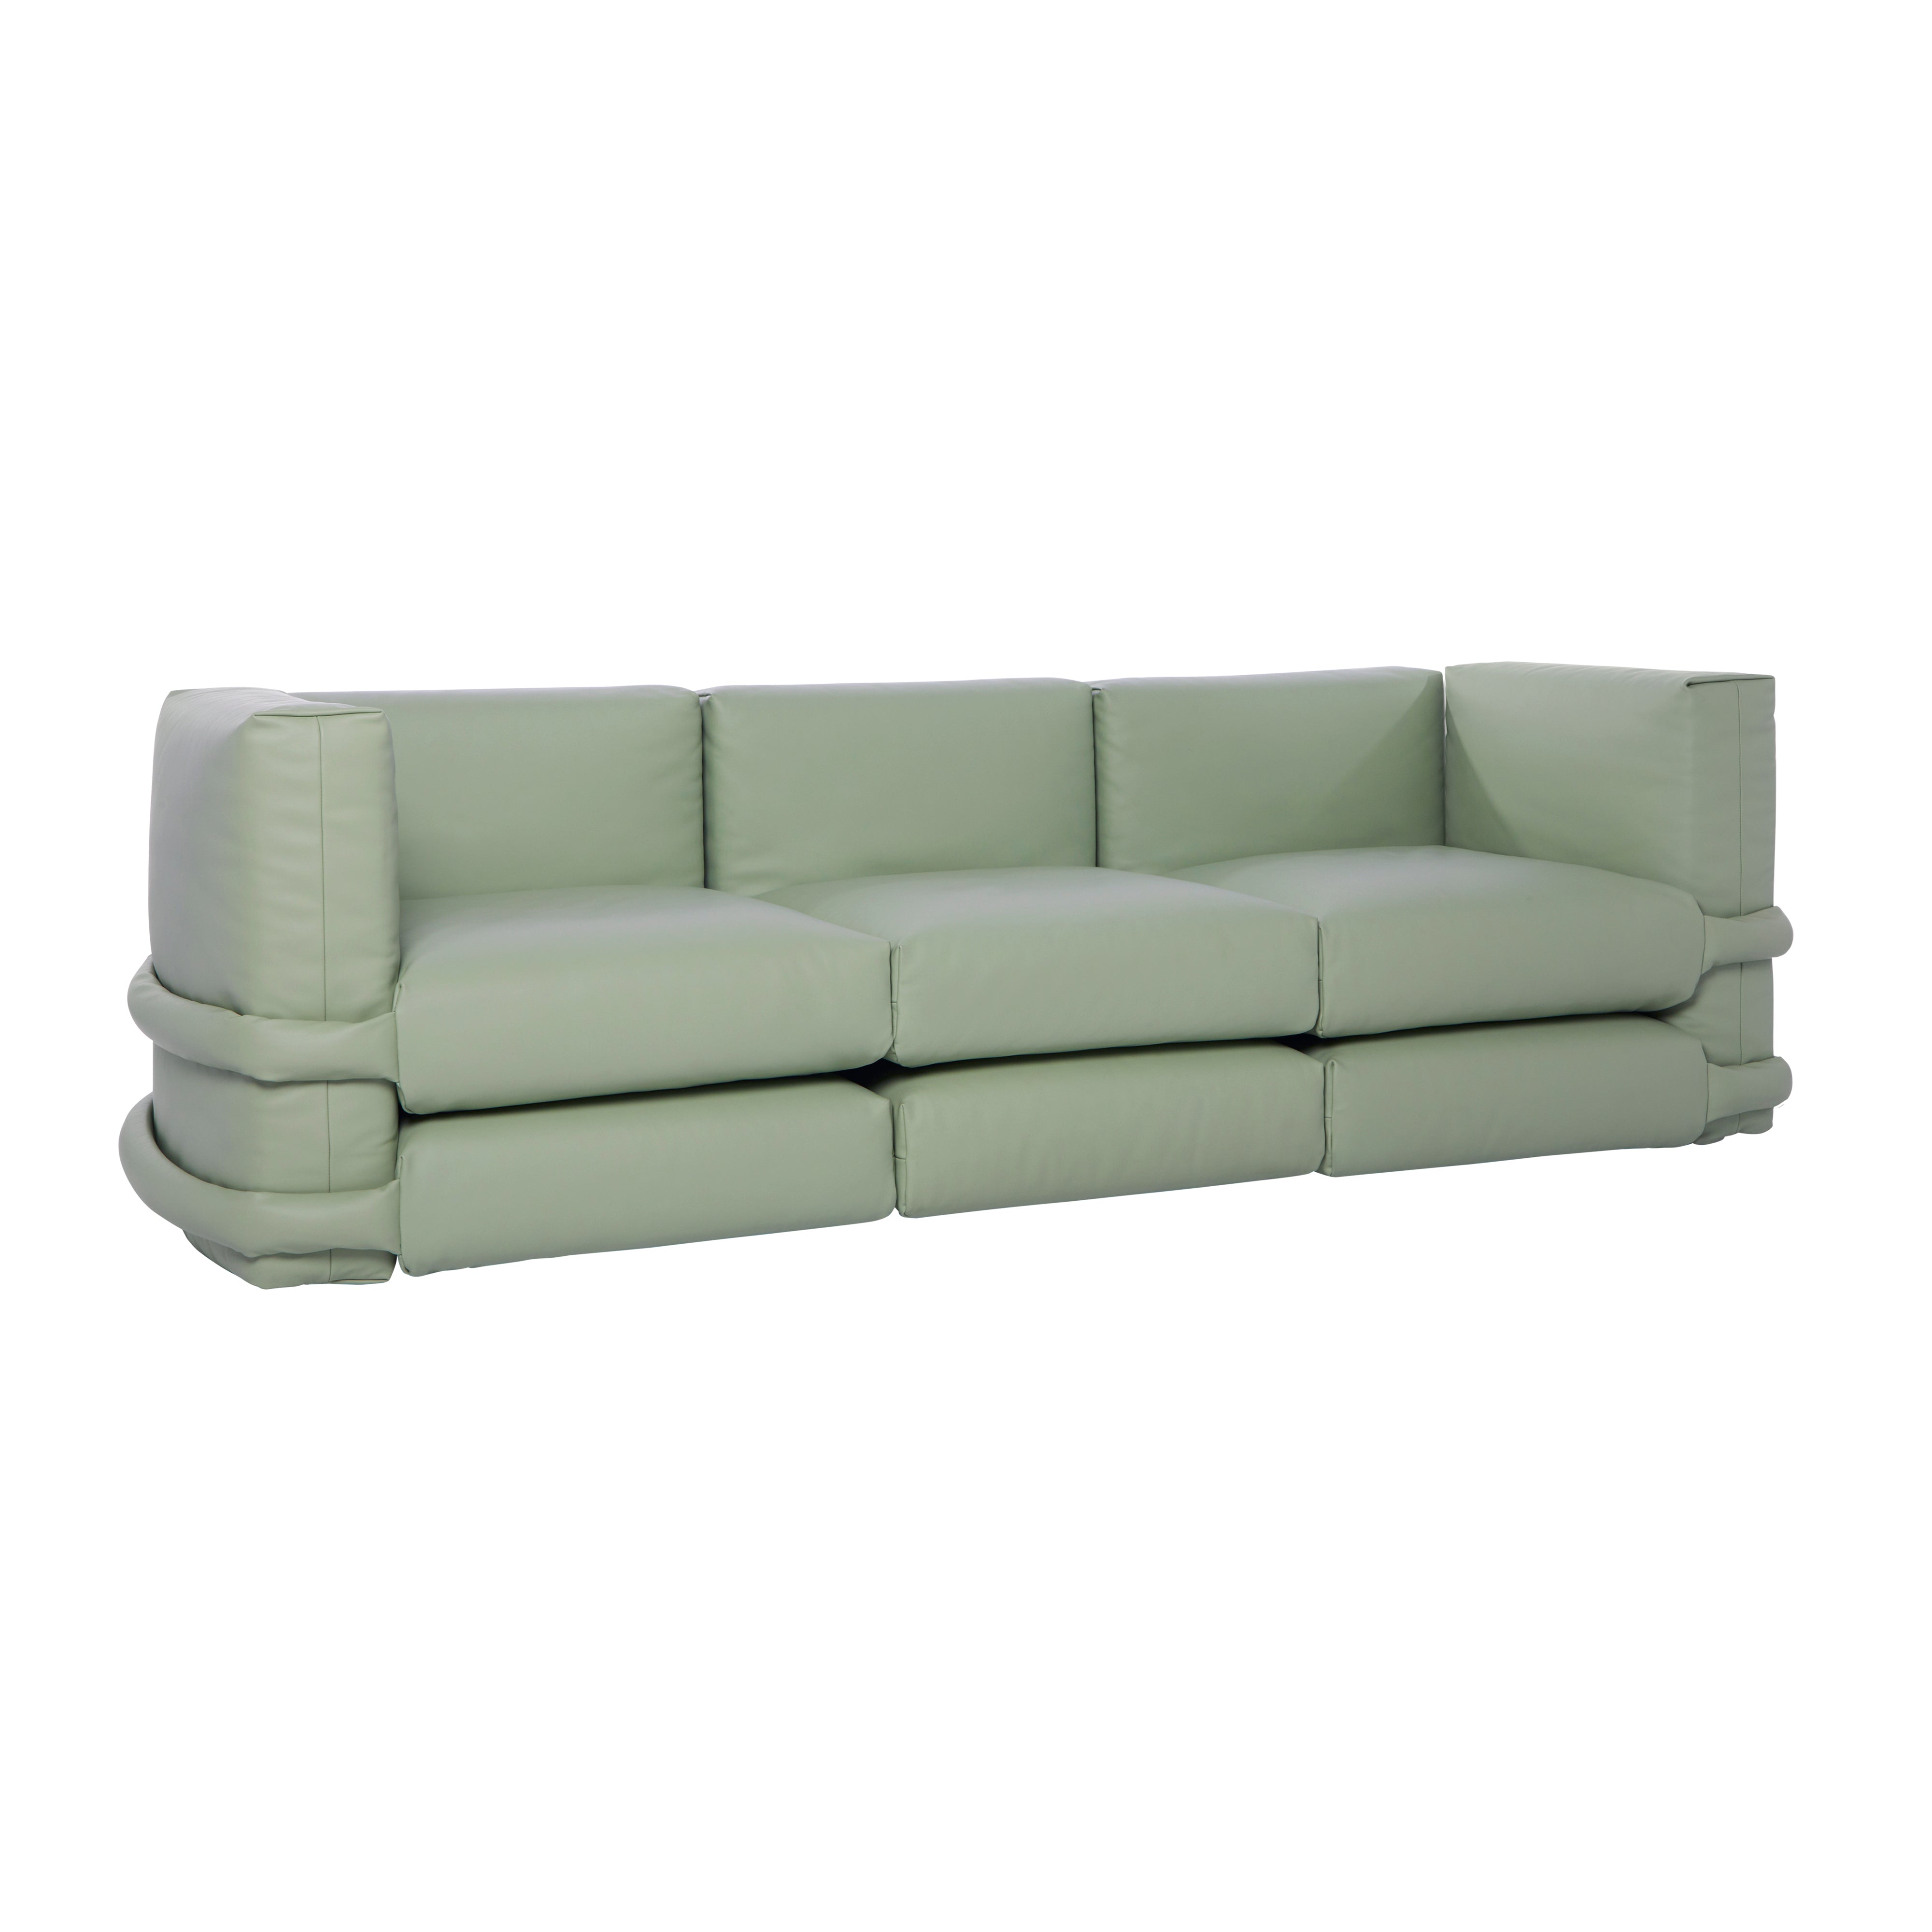 Pillow Modular Sofa: Configuration 3